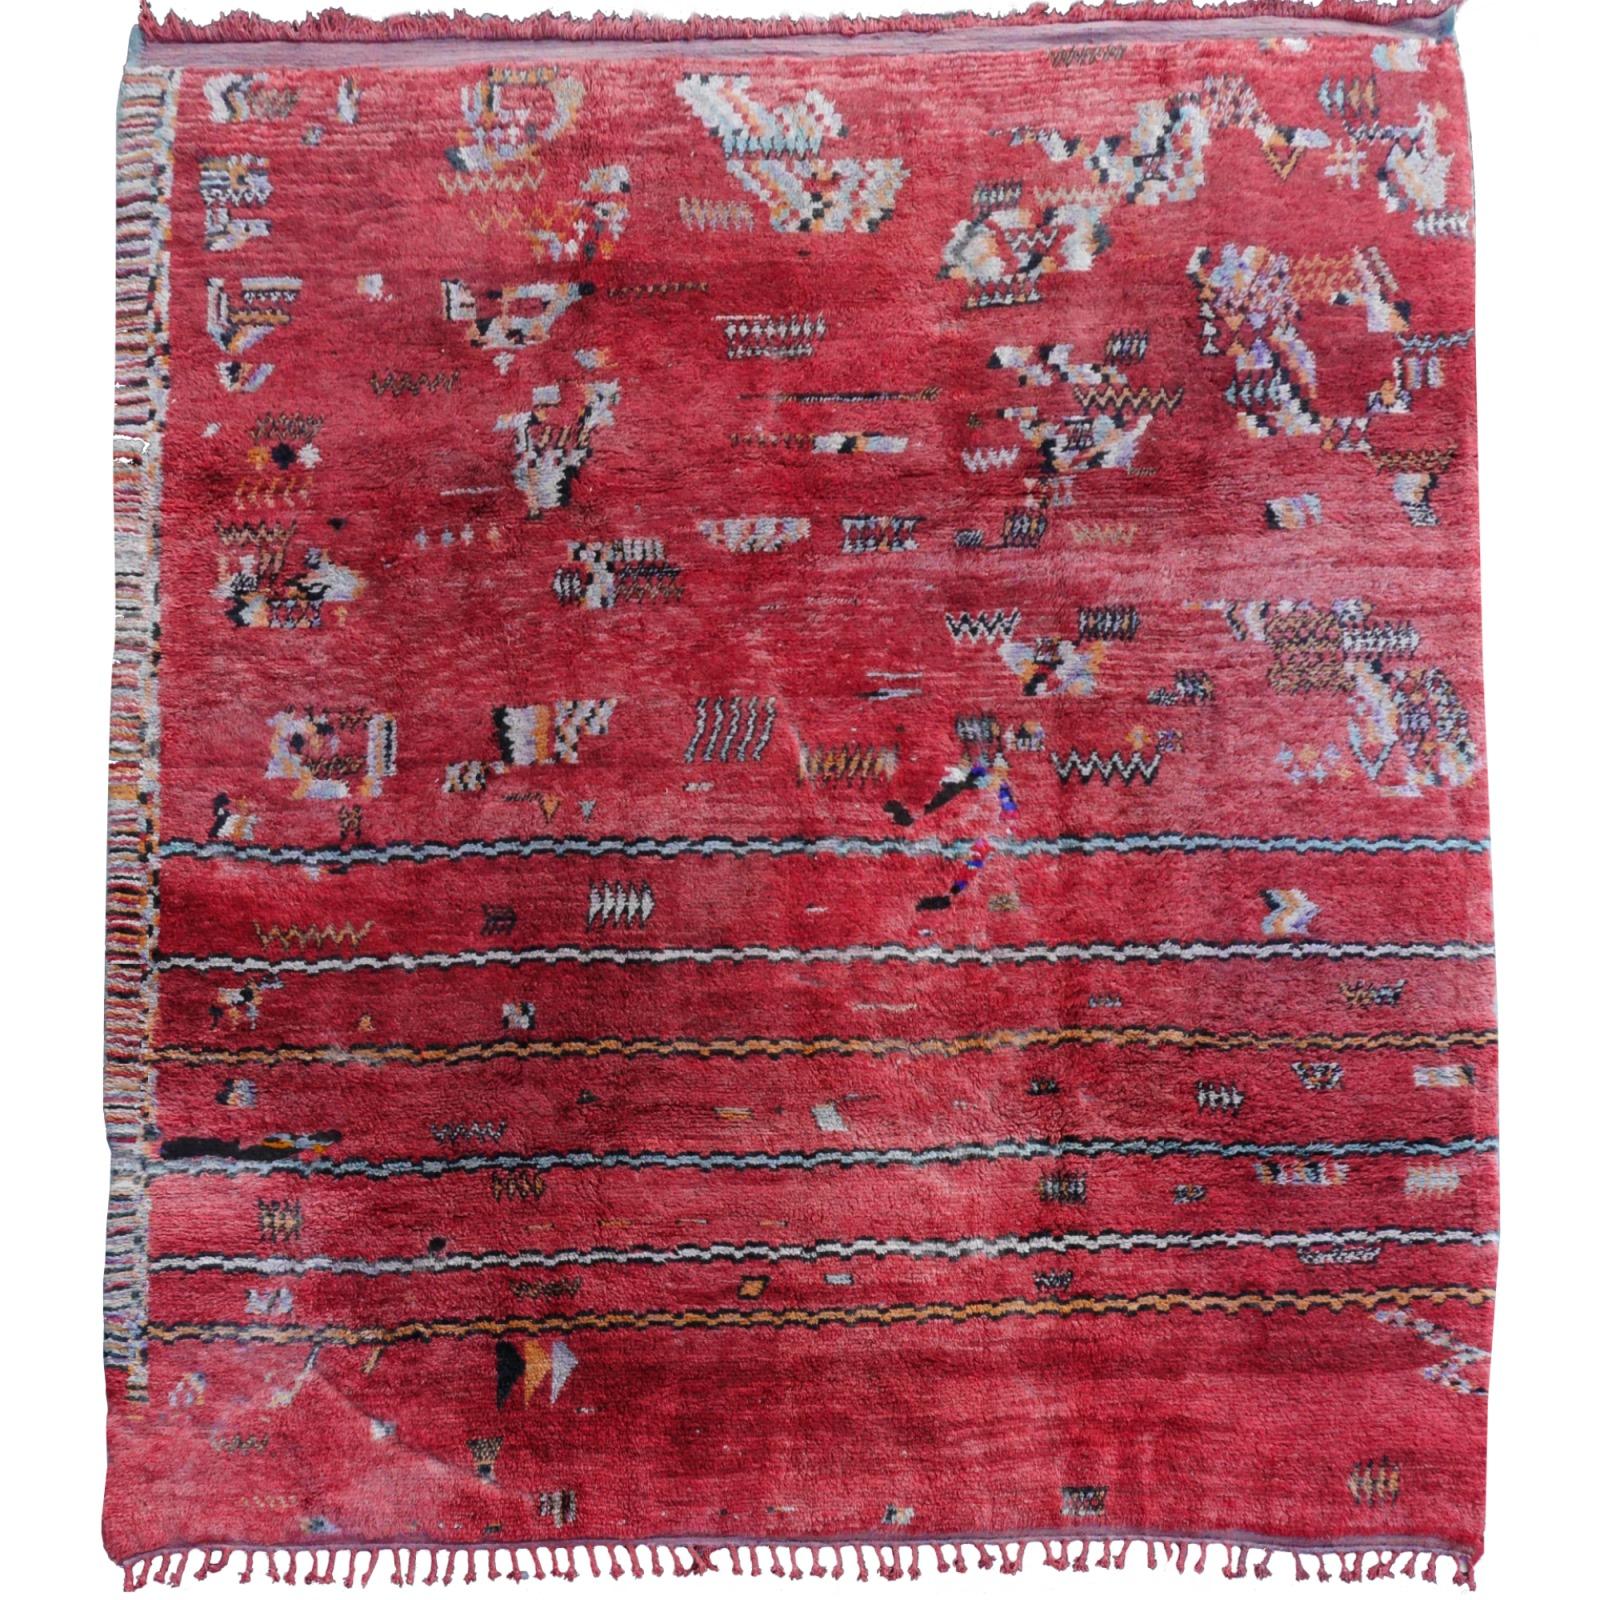 Dies ist ein wirklich einzigartiges Stück. Erstklassiges Sammlerstück. 

Ein doppelseitiger Vintage-Berberteppich aus Marokko, Nordafrika.
Dieses atemberaubende Kunstwerk wurde mit zwei Designs handgeknüpft. Diese Art von Teppich ist sehr aufwändig,